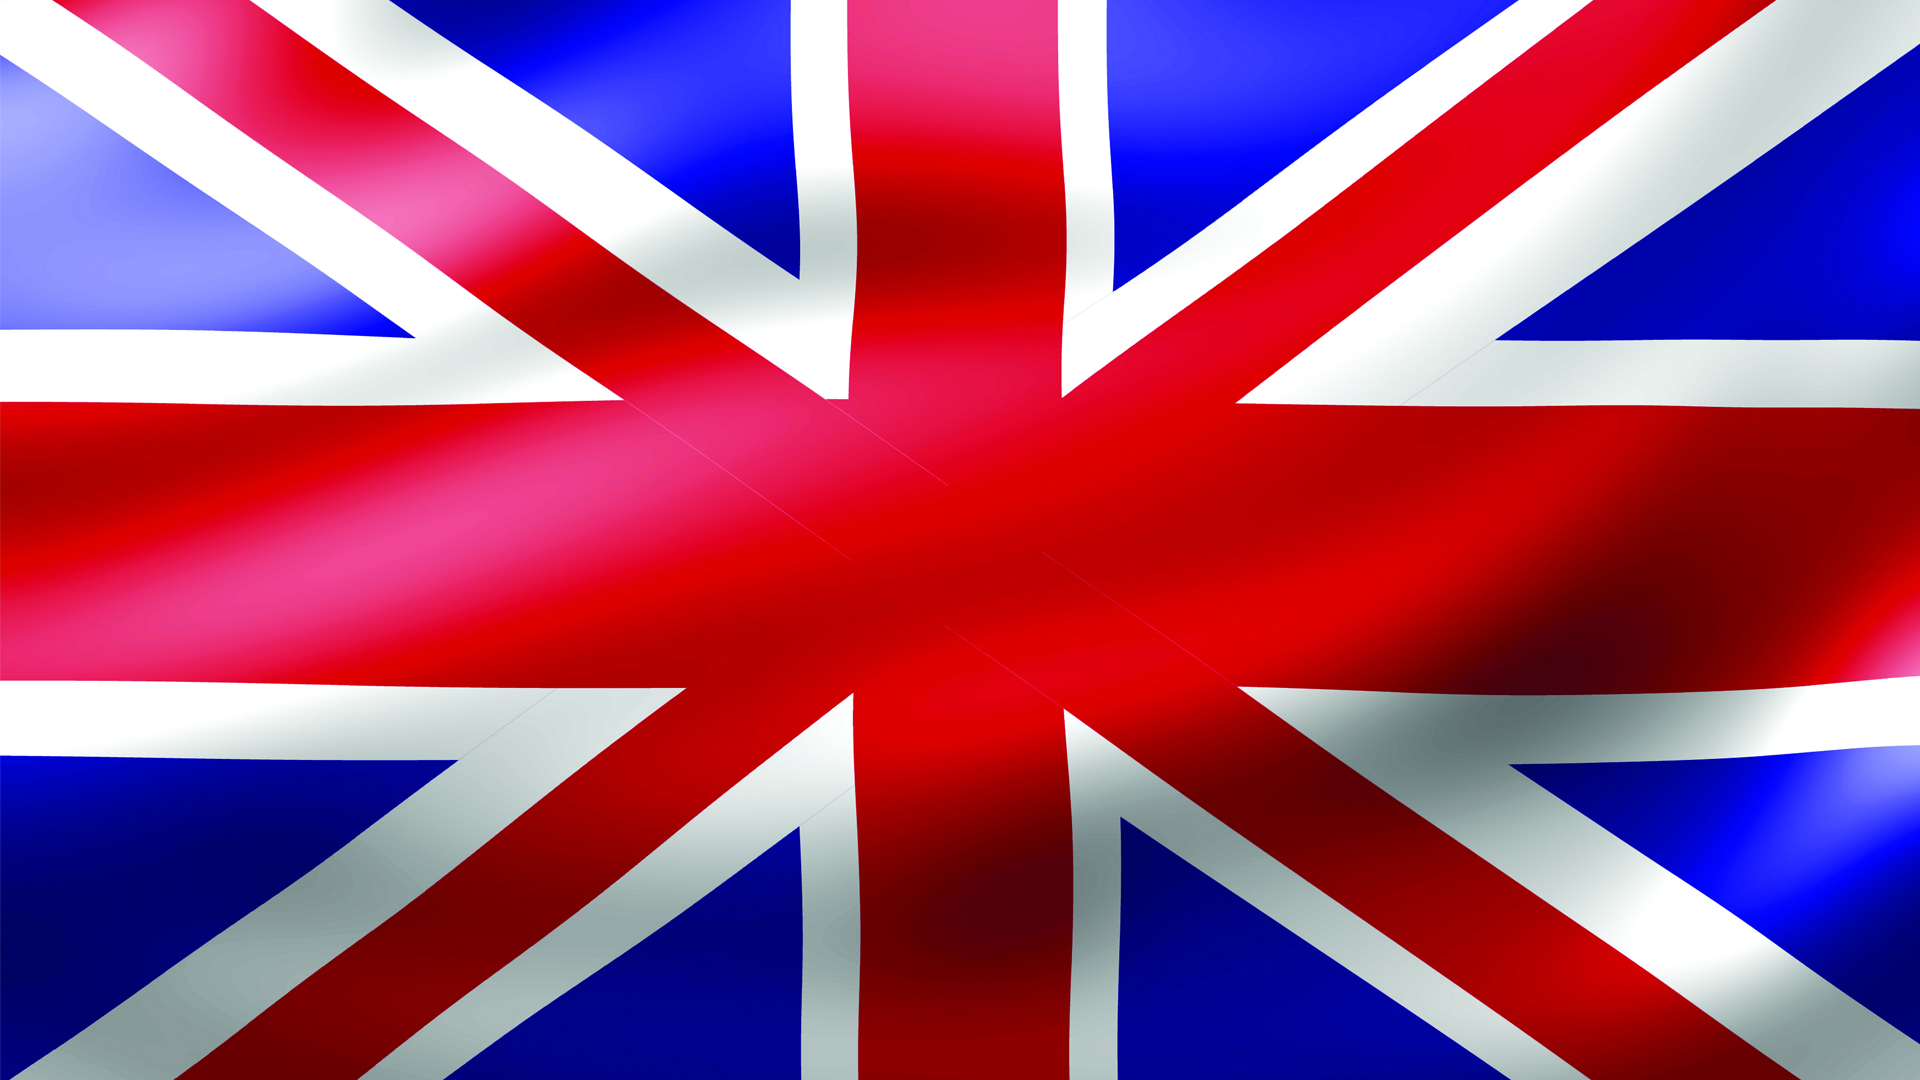 X uk. Флаг Великобритании. Буюк Британия флаг. Ф̆̈л̆̈ӑ̈г̆̈ Ӑ̈н̆̈г̆̈л̆̈й̈я̆̈. Цвета британского флага.